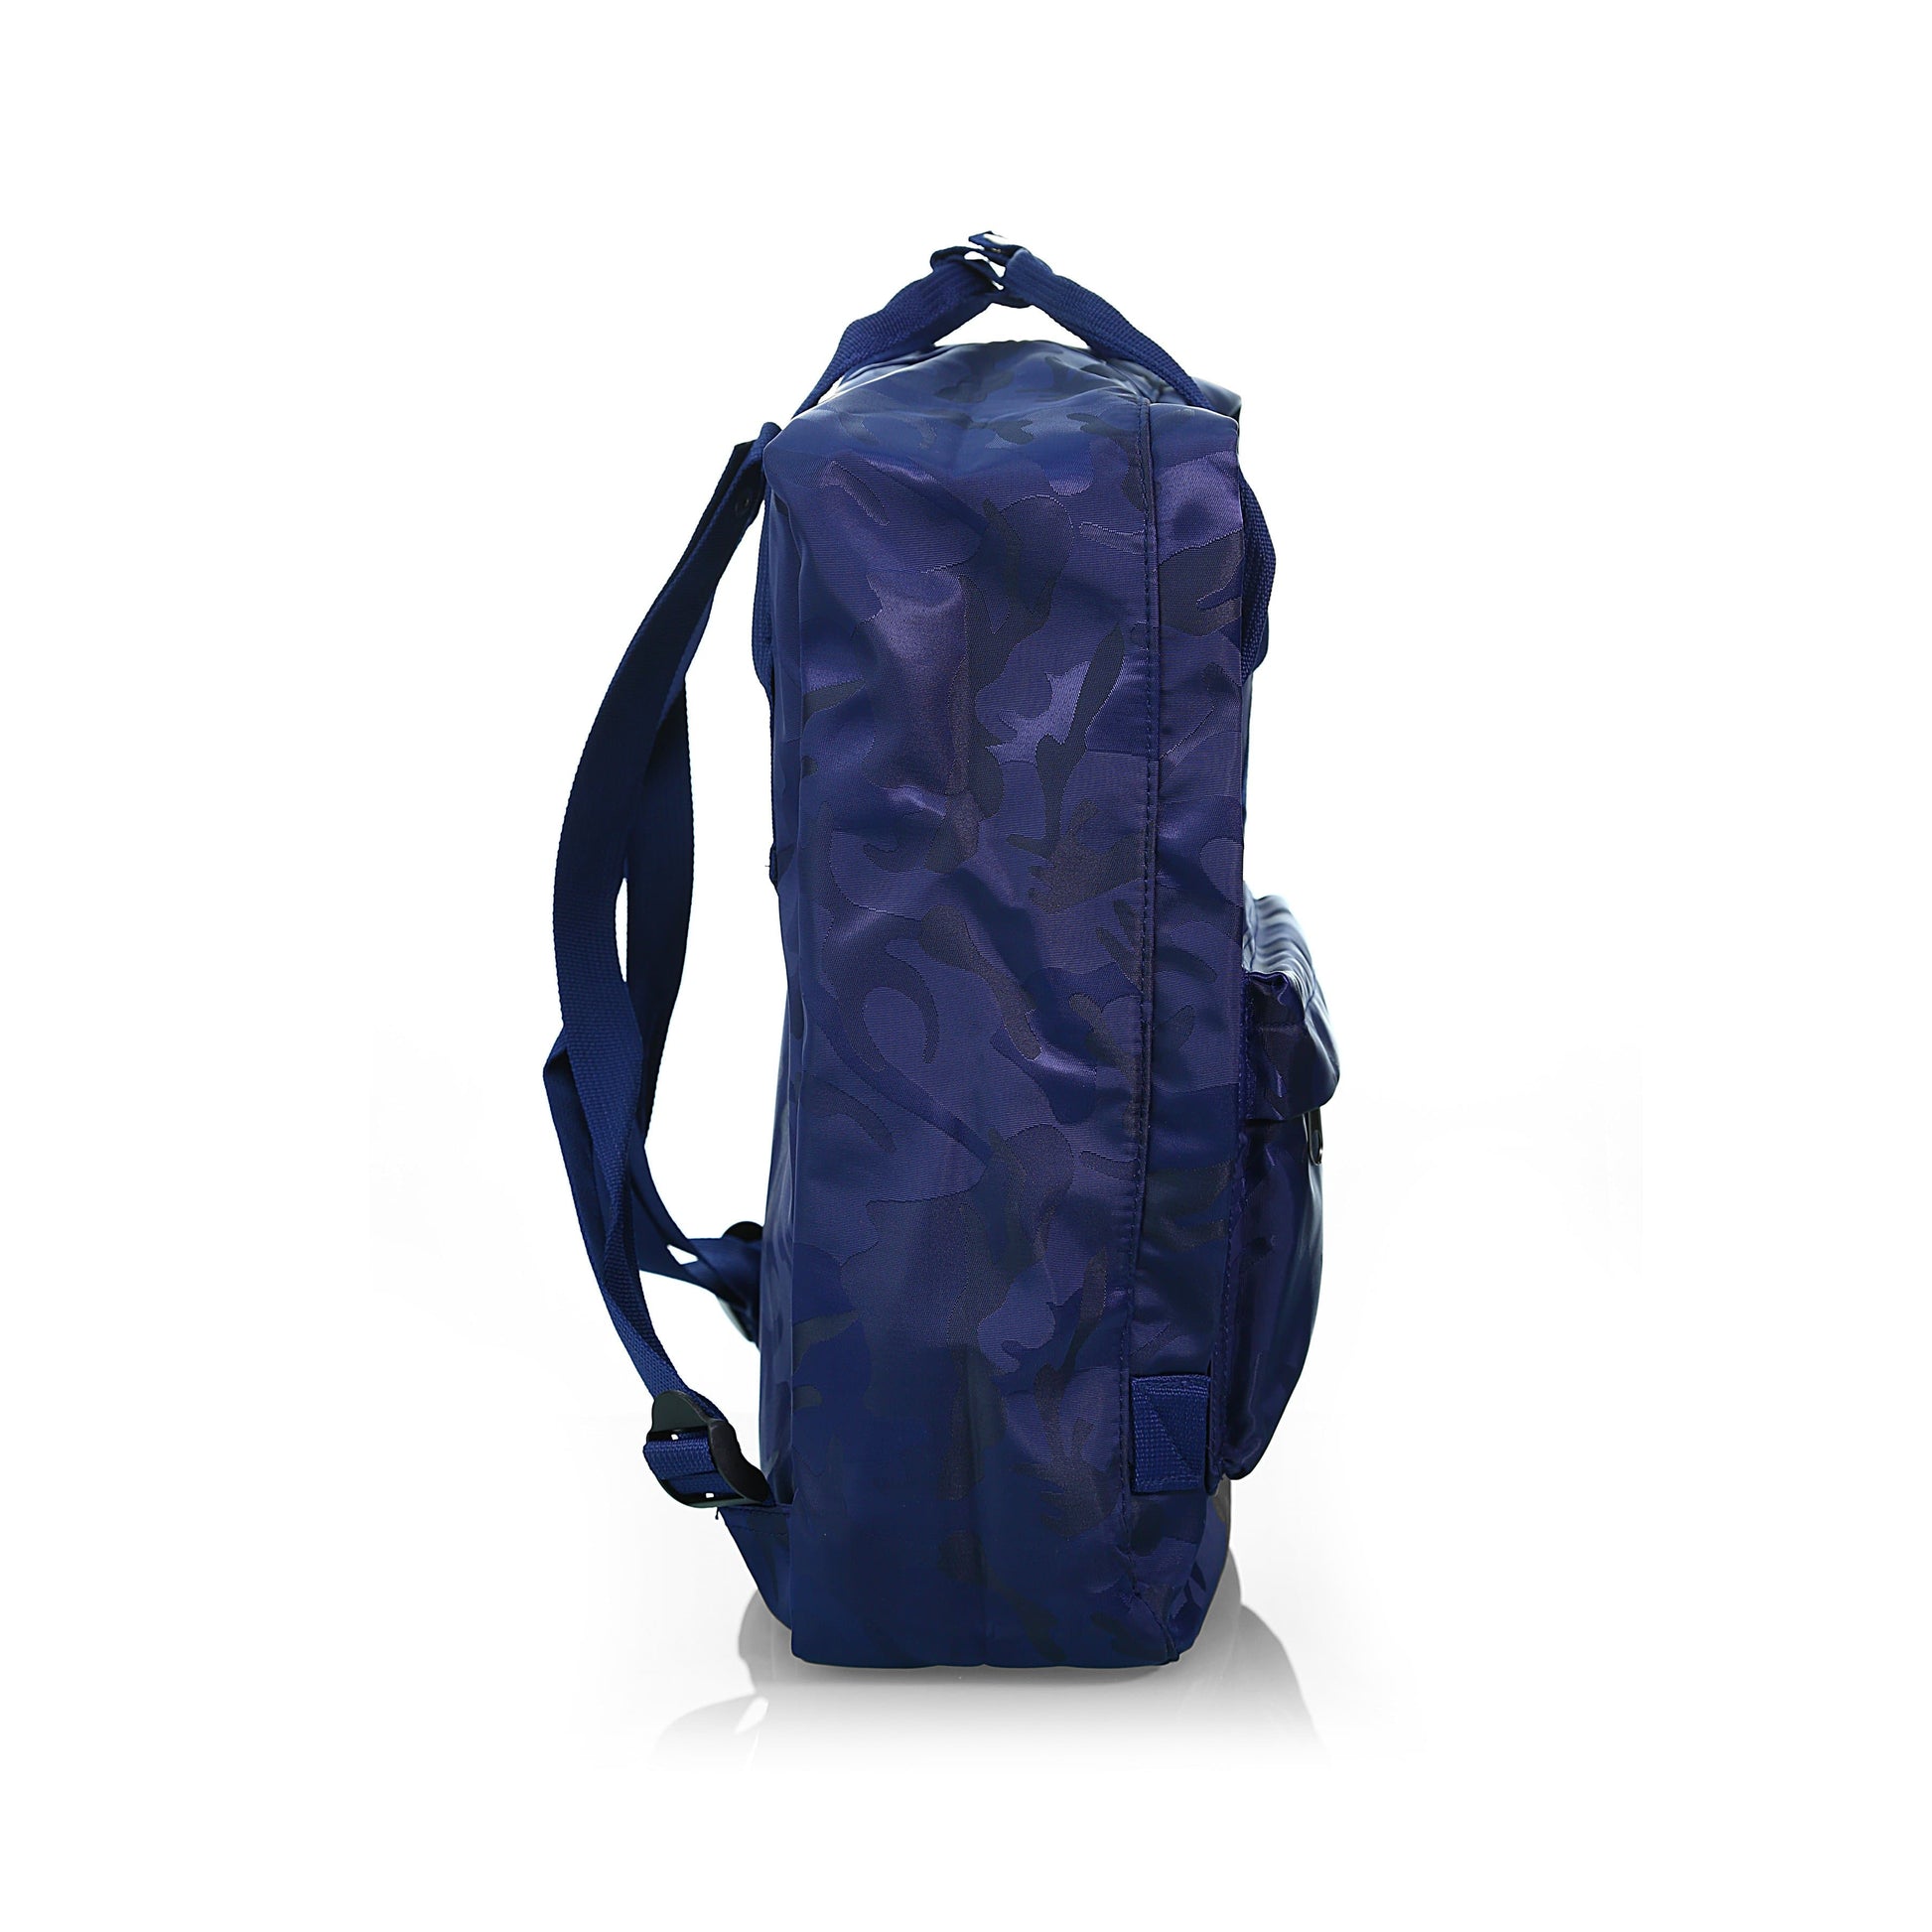 Kuru Kuru クールクール Travel Light Classic Backpack Bag + FREE P399 Magic Cooling Towel - Diligence1International